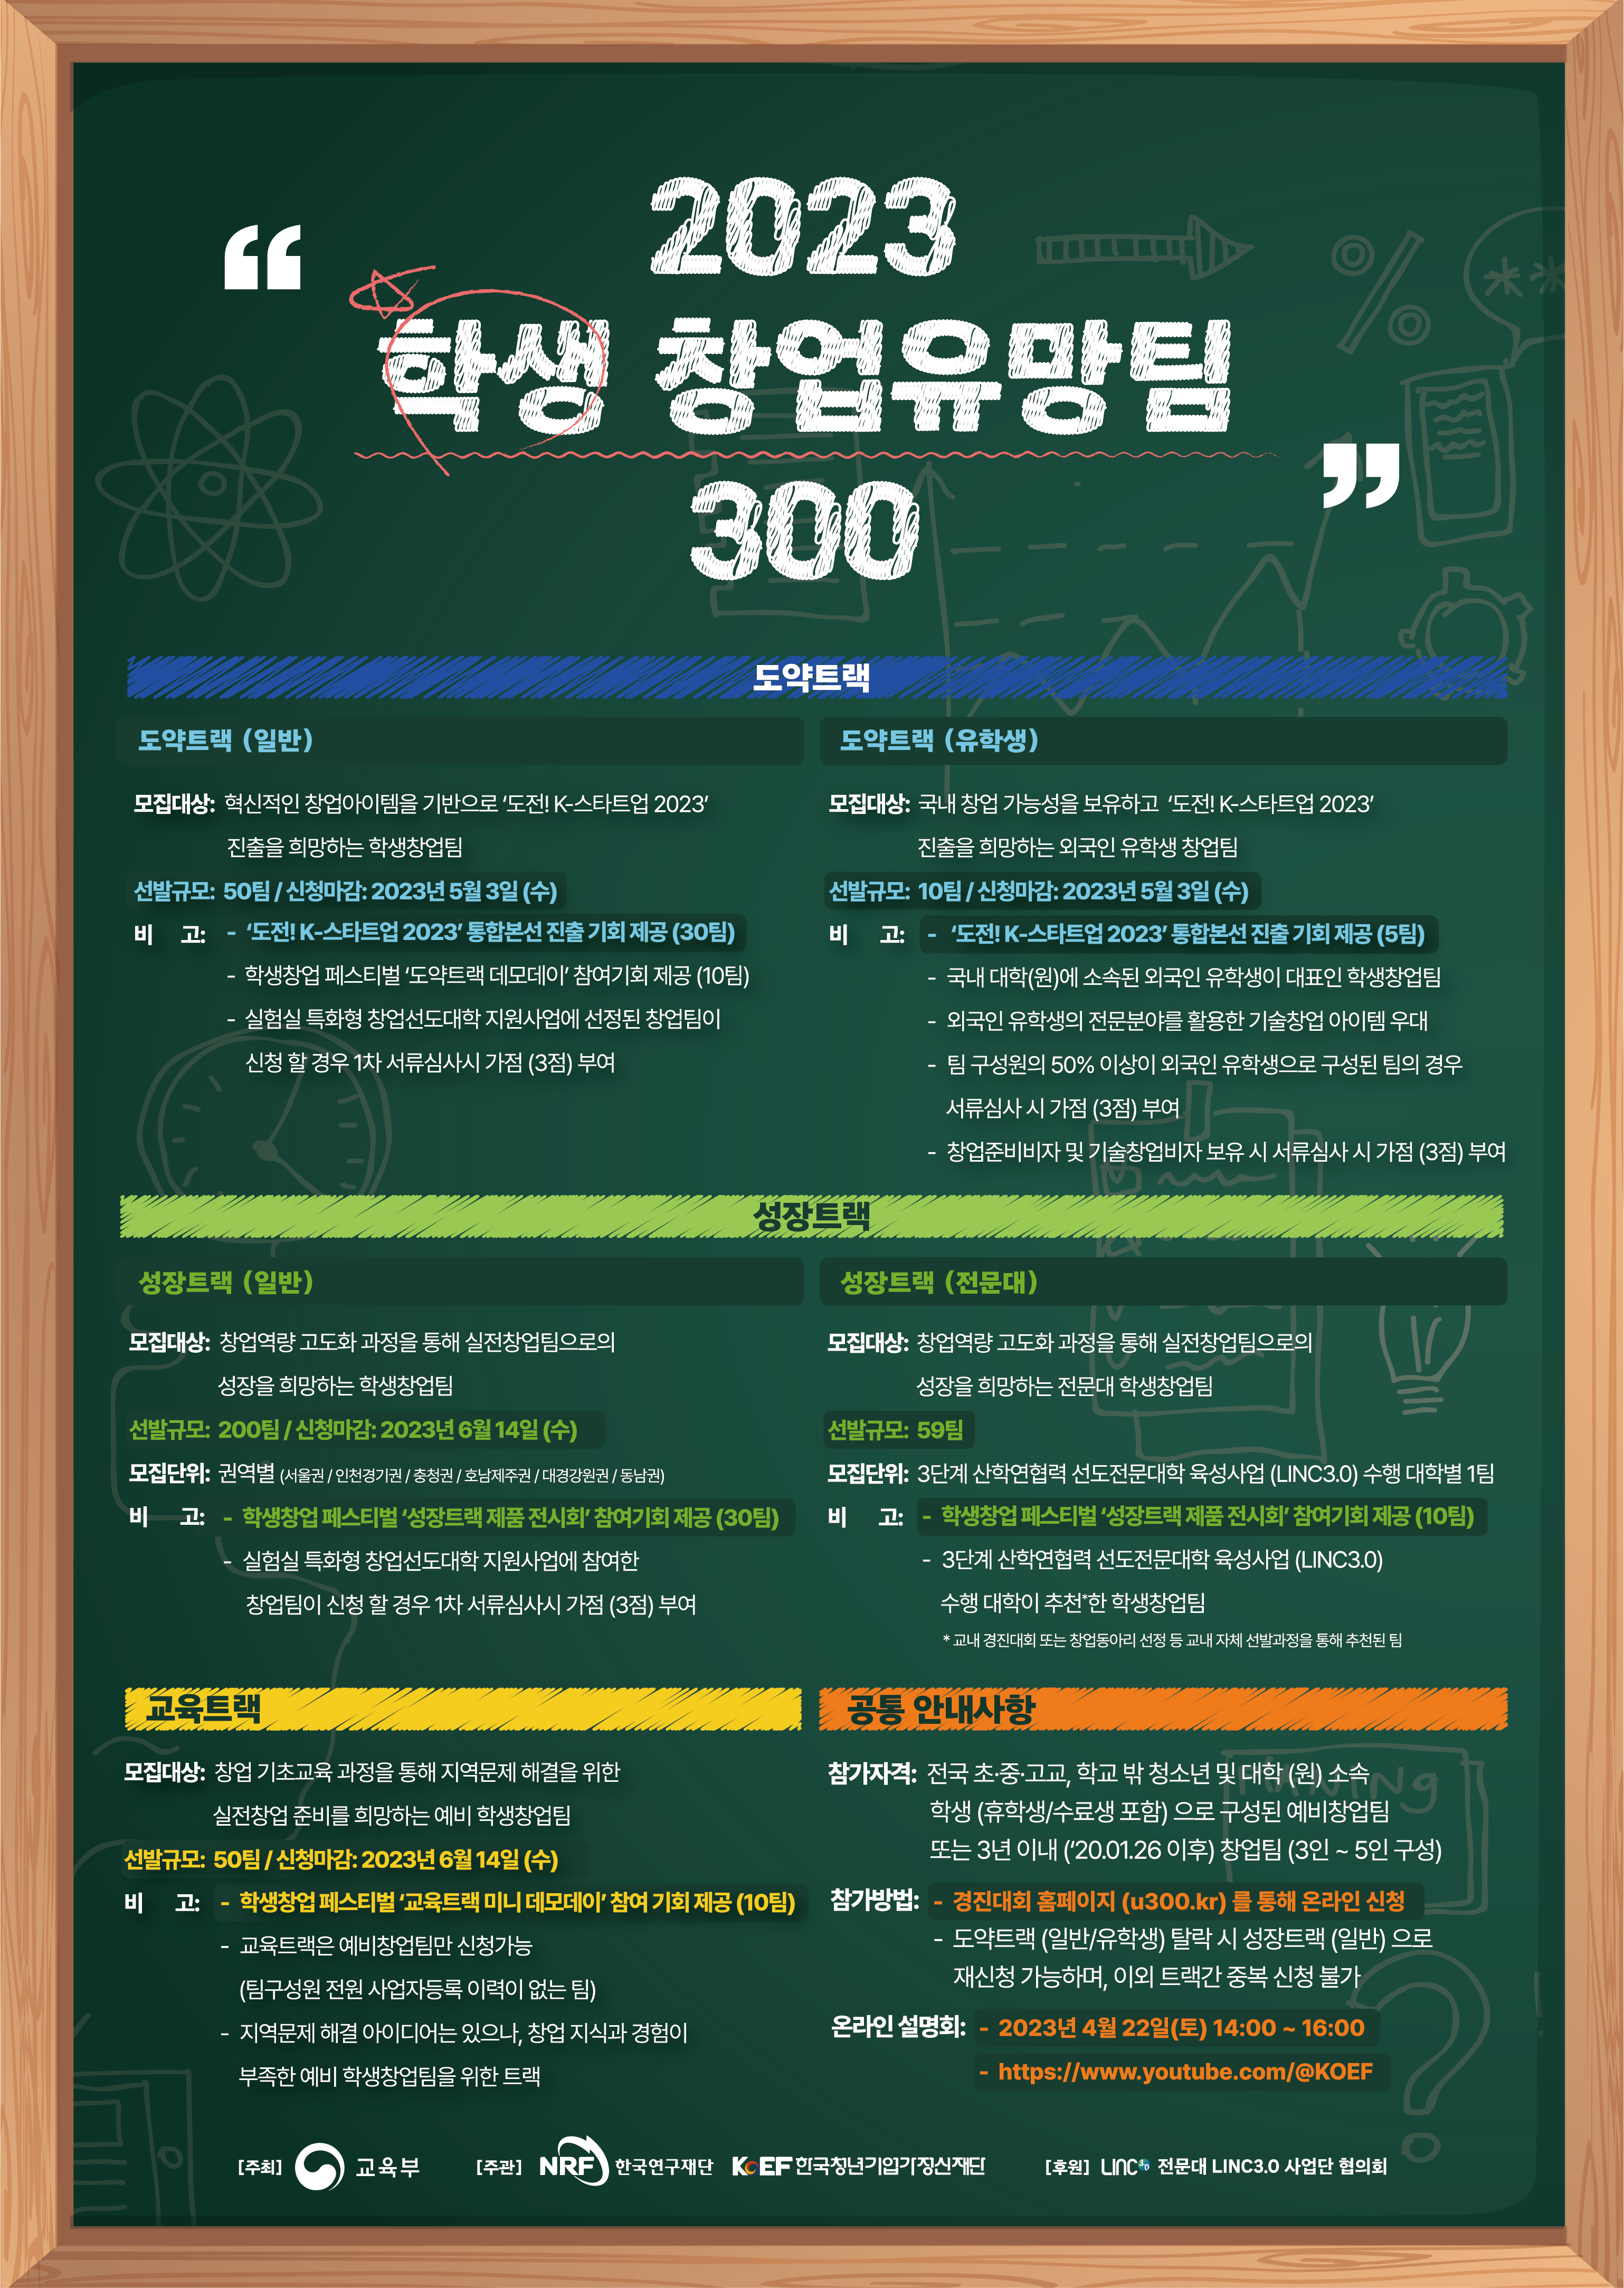 (붙임 2) 2023 학생 창업유망팀 300 포스터